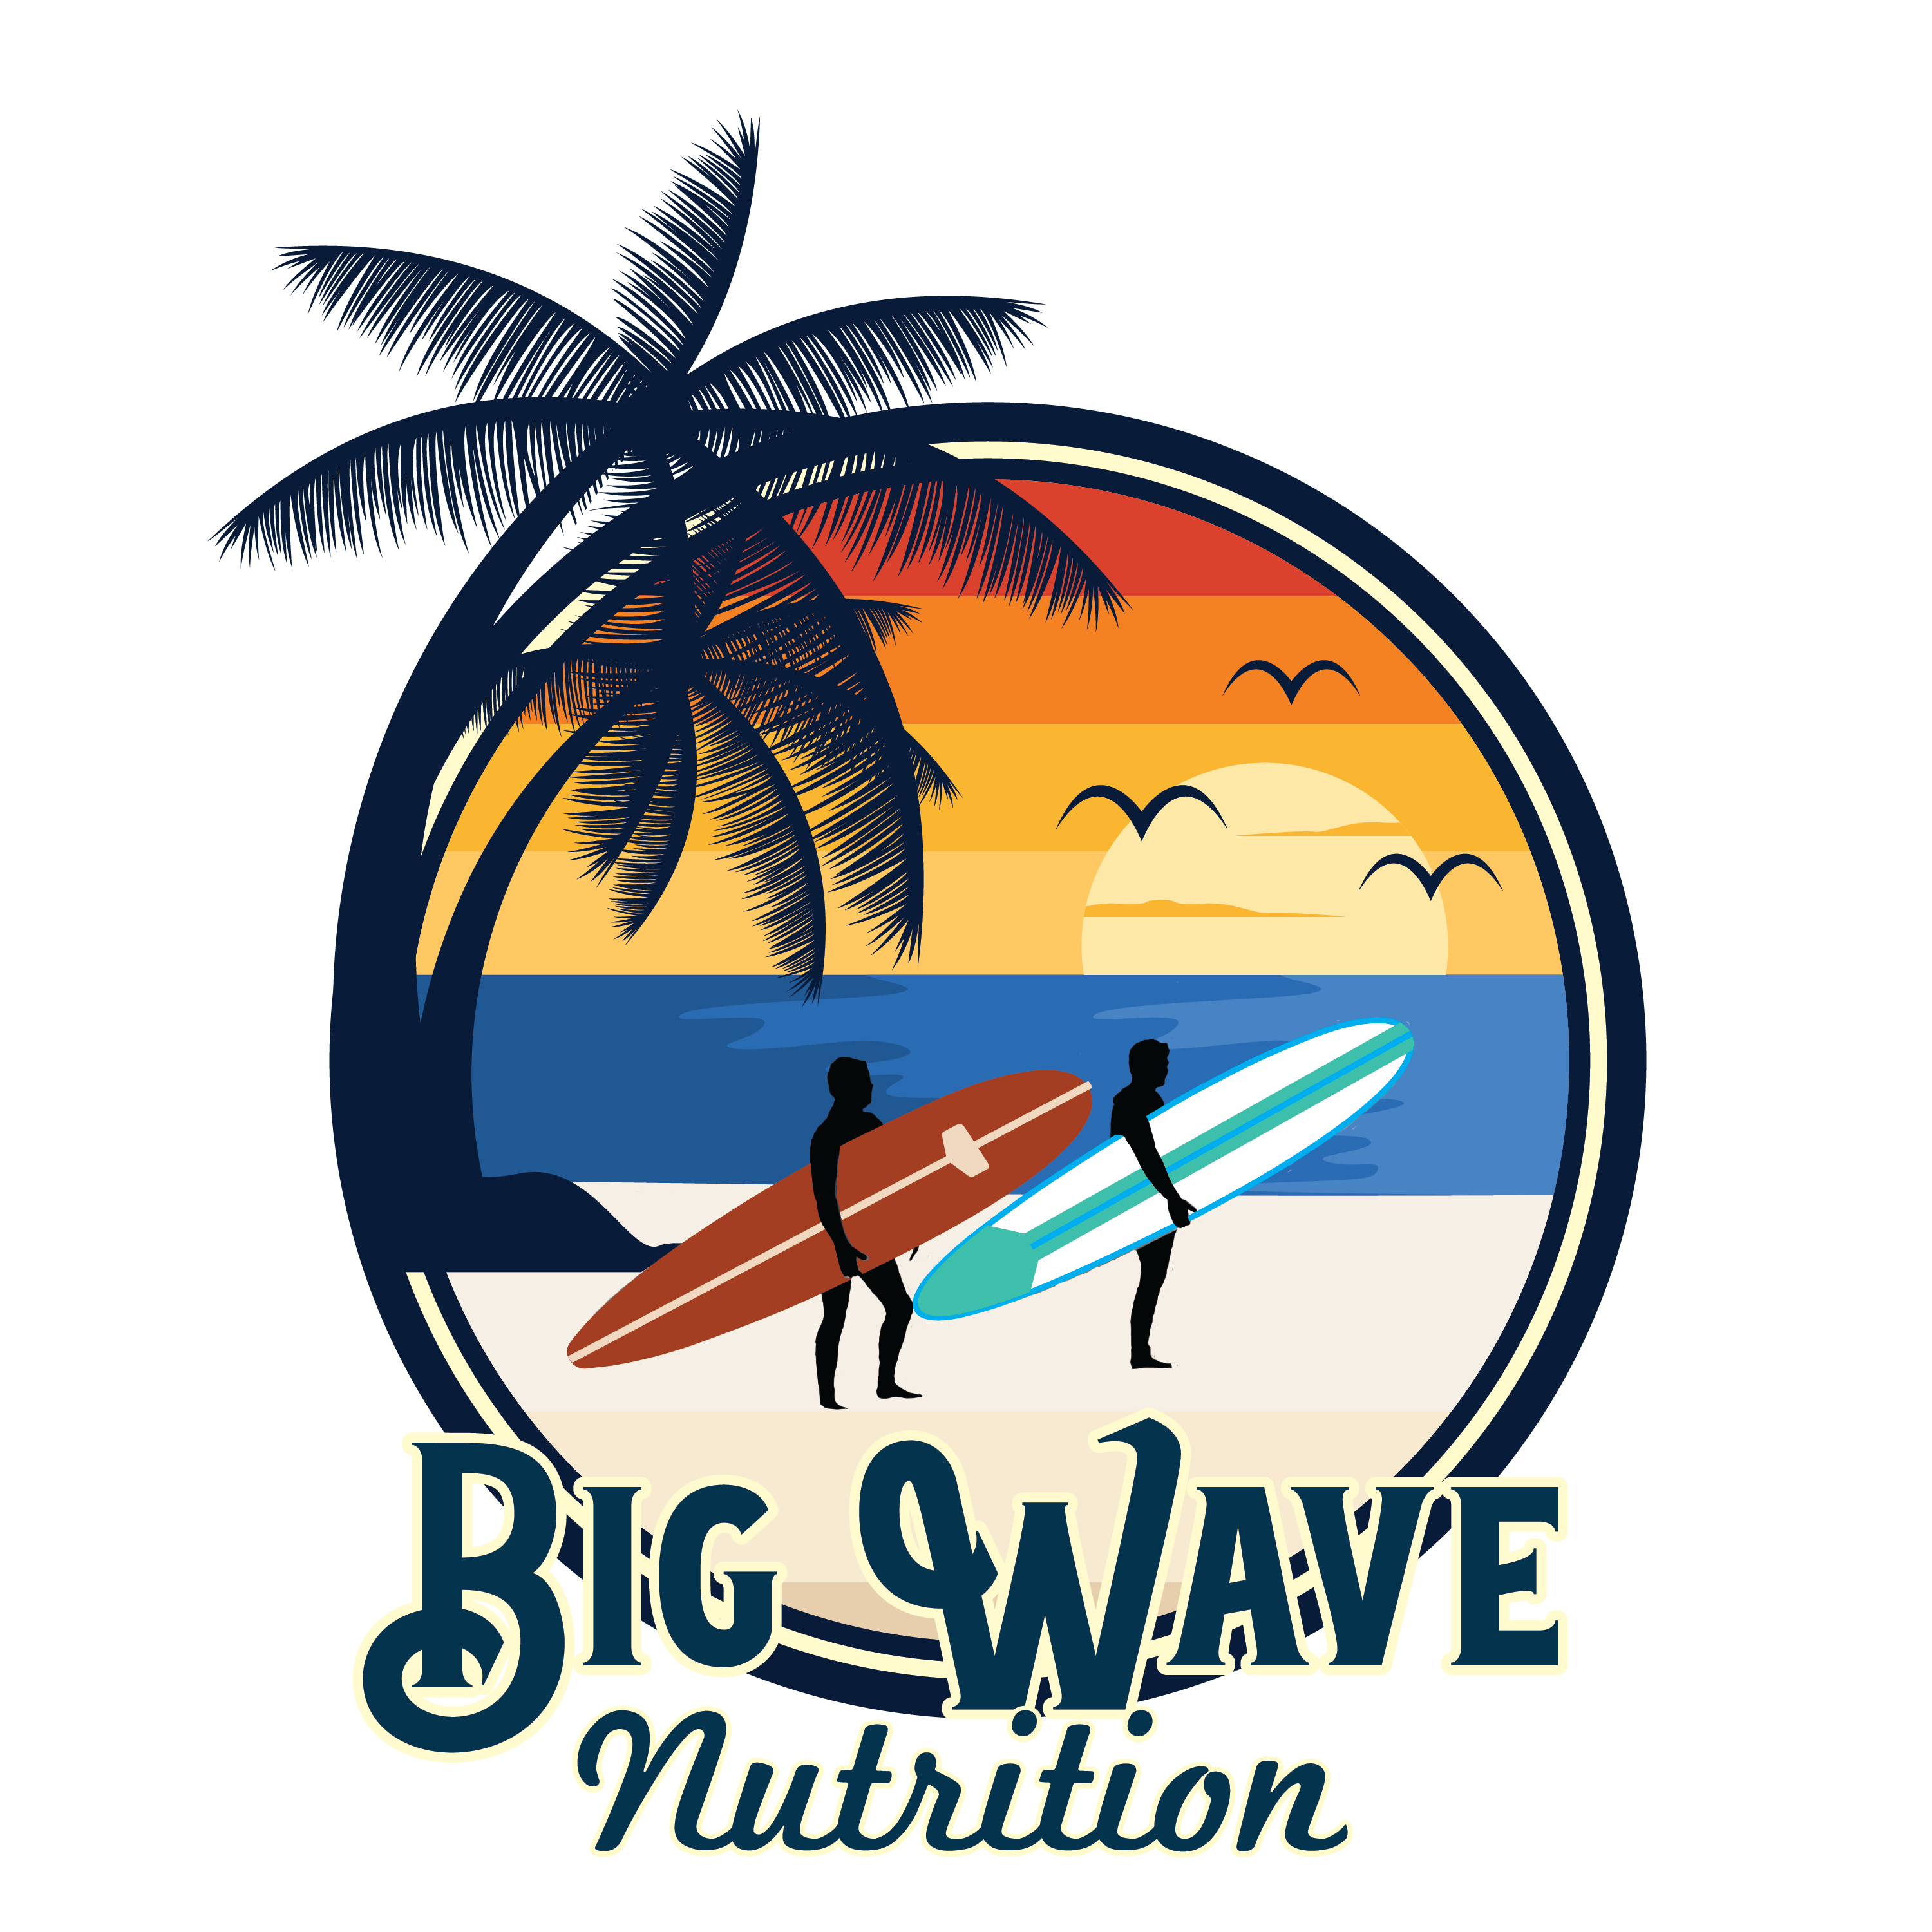 Big Wave Nutrition